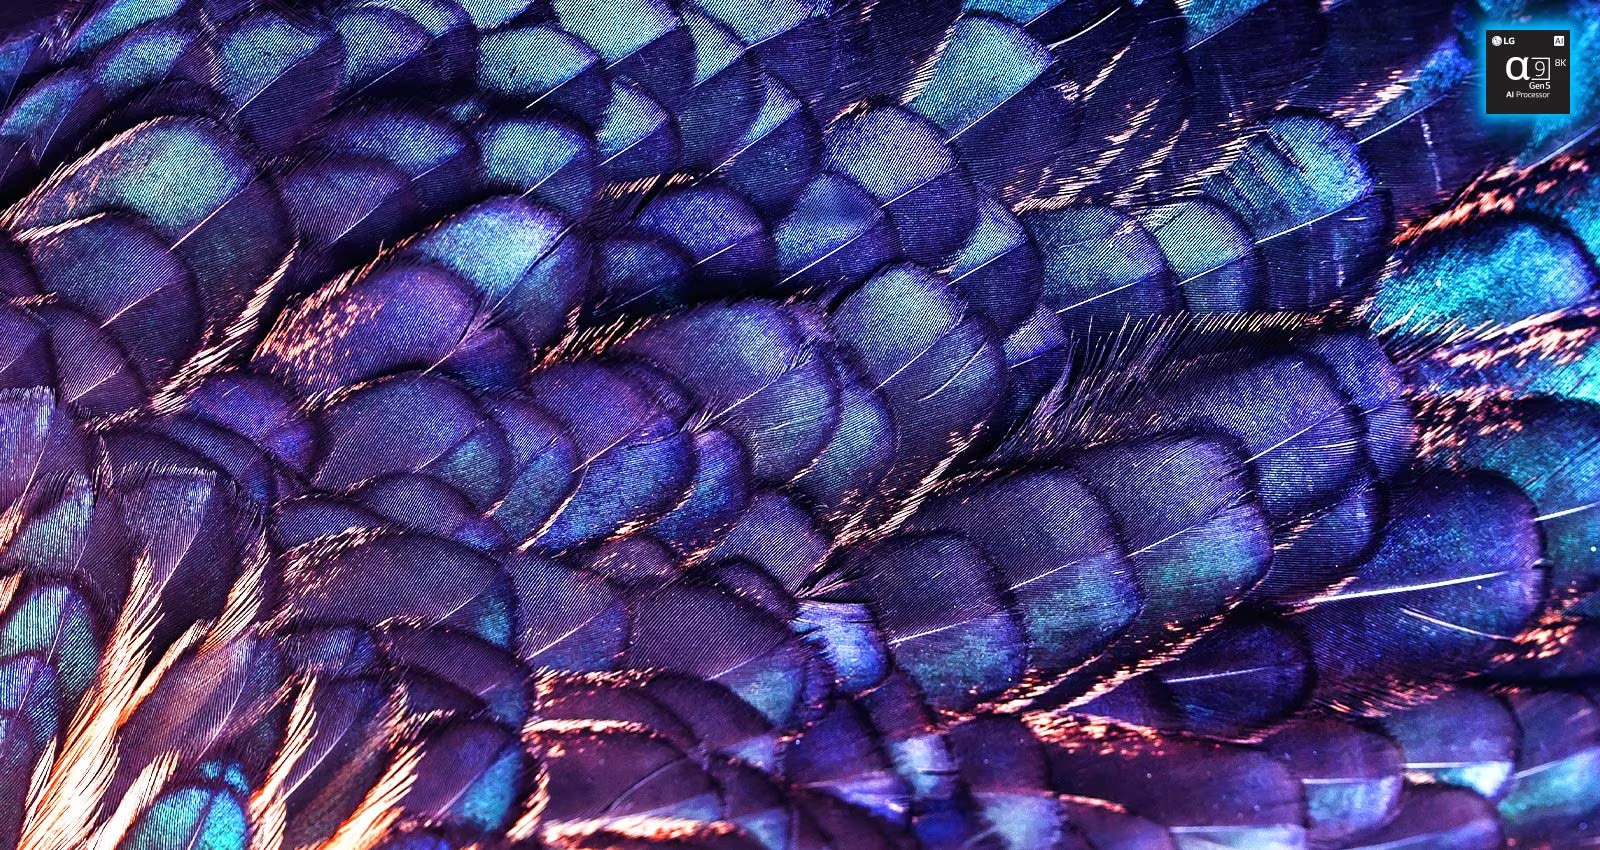 圖片顯示淡紫和平鳥上色彩斑斕的明亮羽毛紋理。圖片分為兩半，上半部分更加鮮艷靈動，寫著人工智能 8K 升級功能，配有處理器晶片圖，下半部分有點淡色。